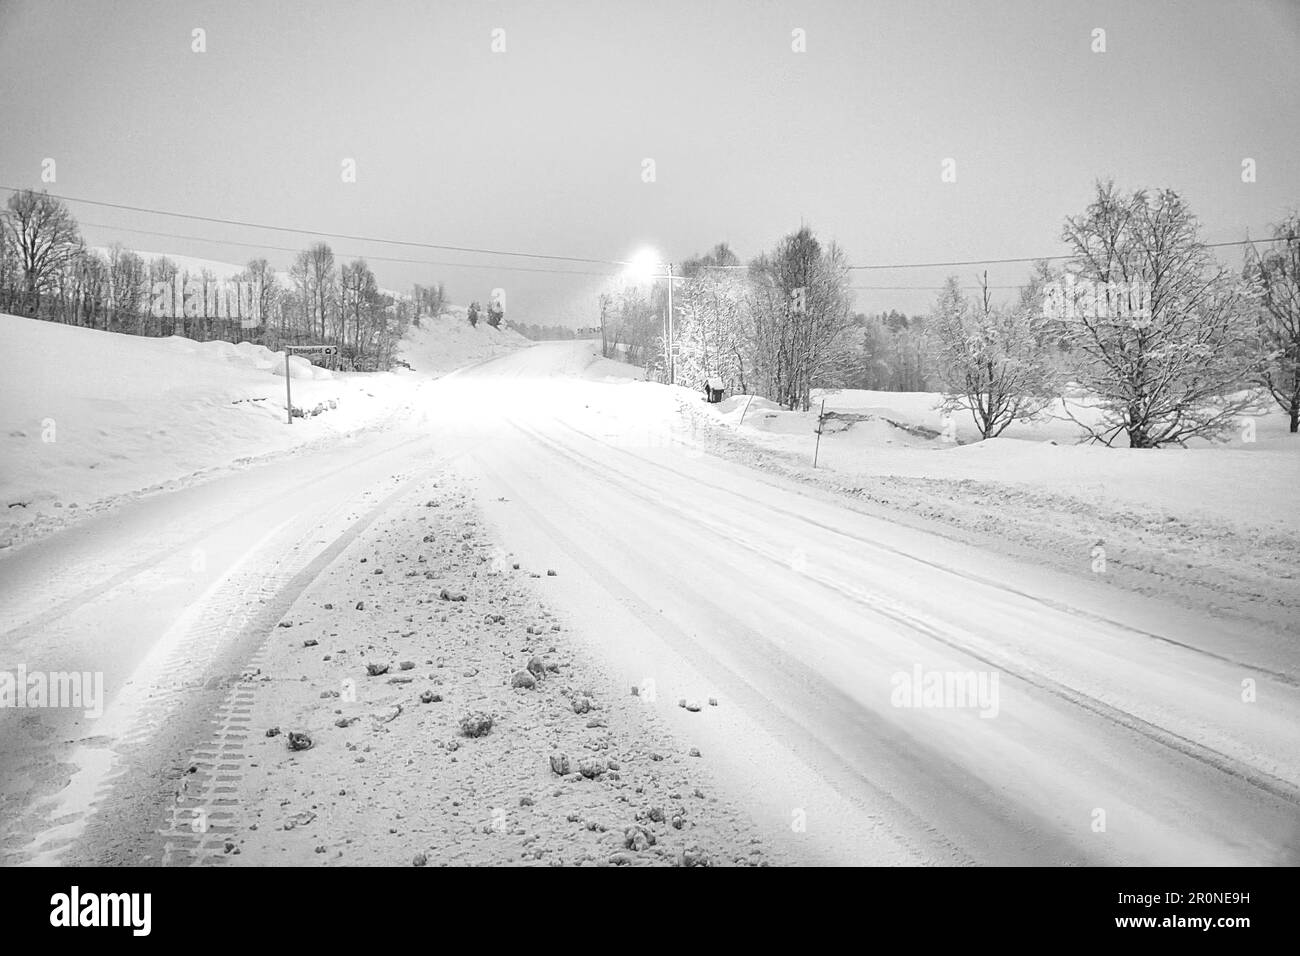 Paesaggio invernale in Scandinavia in bianco e nero. Strada innevata con alberi innevati. Sulla strada brilla un lampione. Foto di paesaggio dal NOR Foto Stock